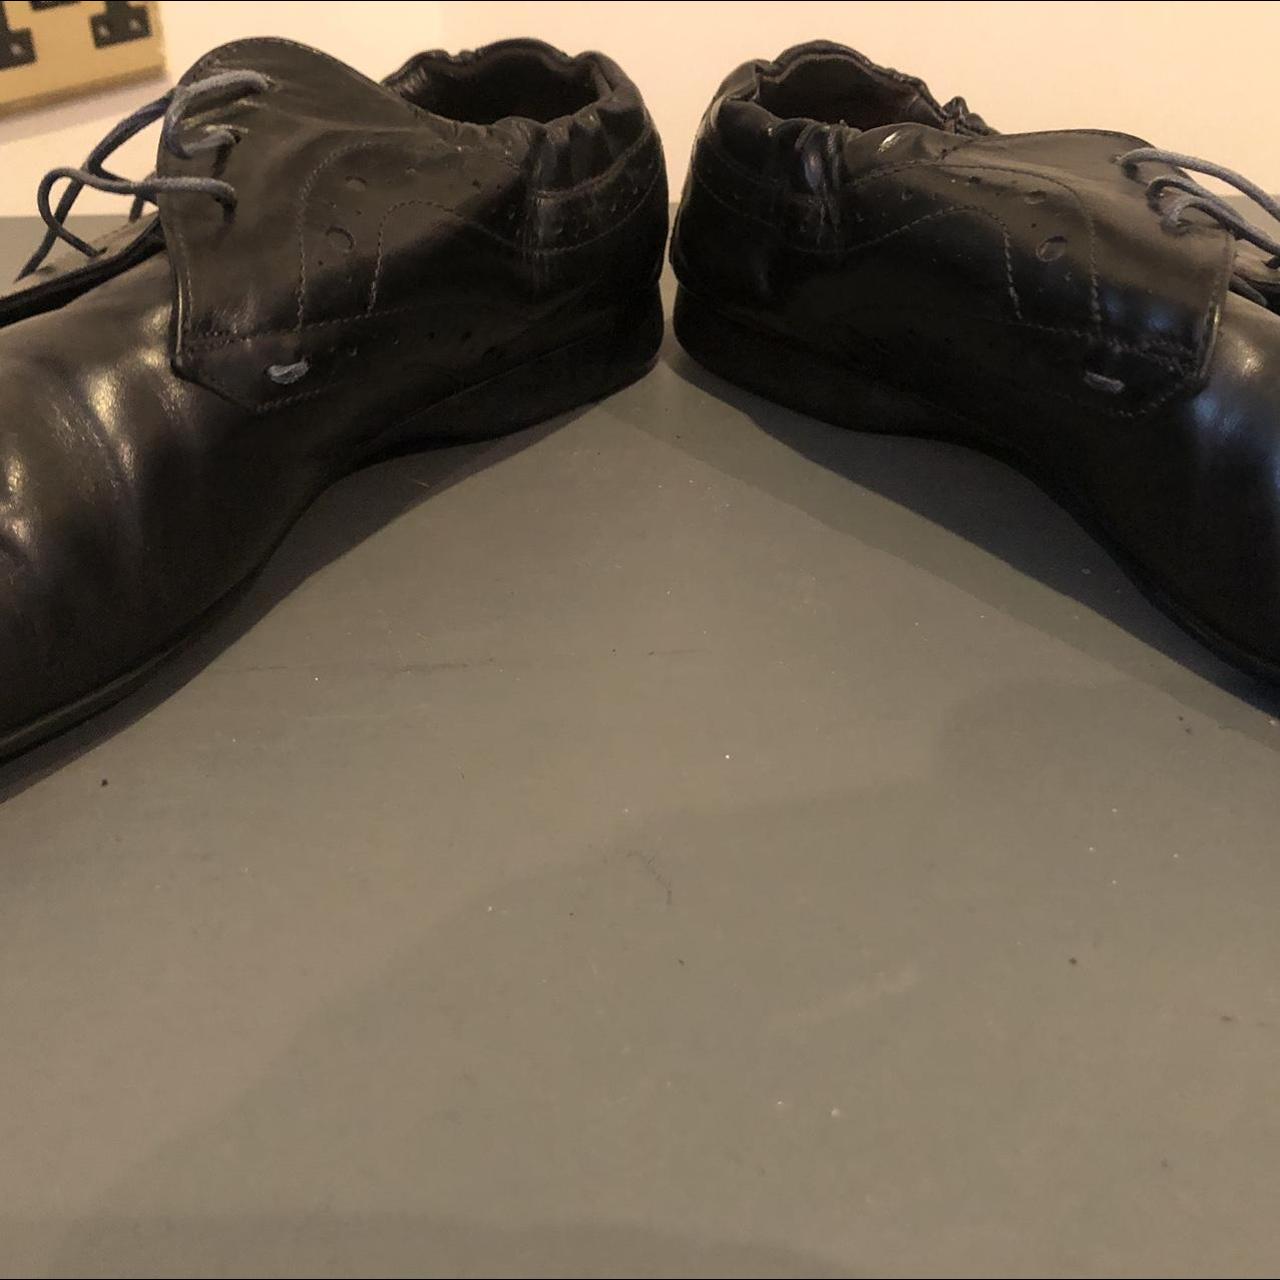 Paul Smith Suit Shoes Size 11. Good condition.... - Depop